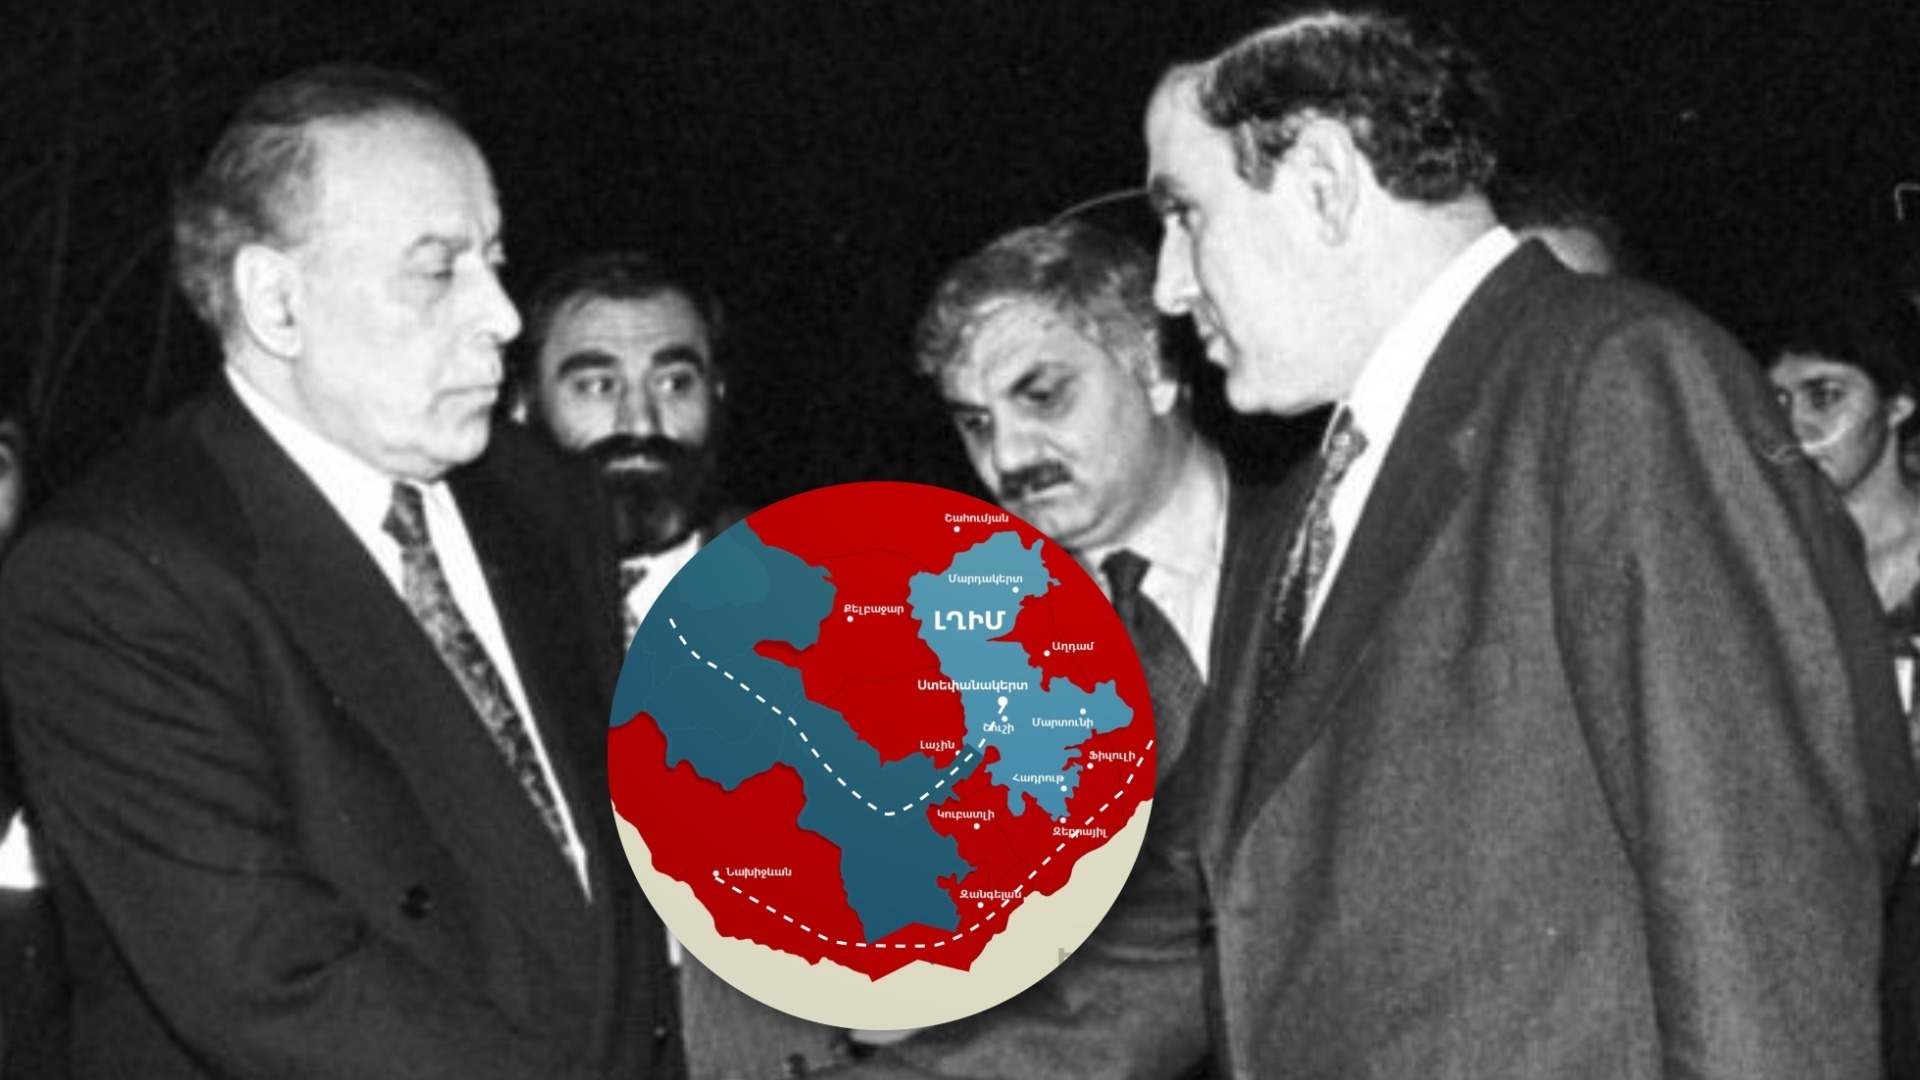 Թուրքիան և Ղարաբաղյան հակամարտությունը․ մաս Բ